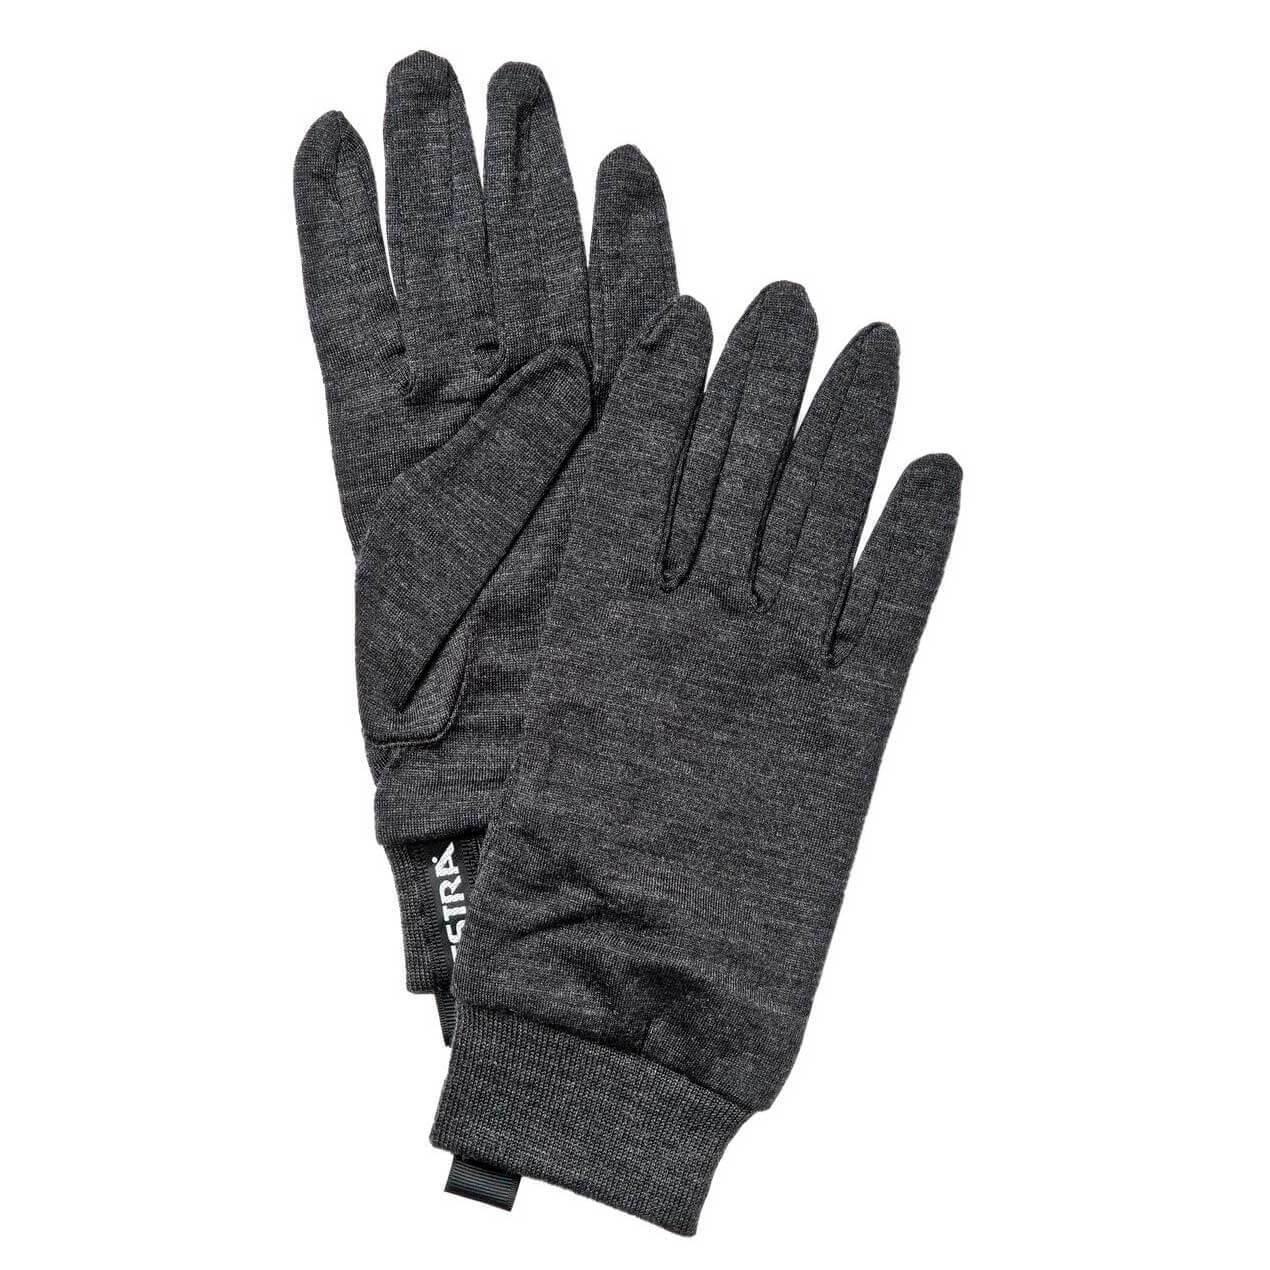 Hestra Merino Wool Liner Active (Handskar) från Hestra. 6 | TacNGear - Utrustning för polis och militär och outdoor.